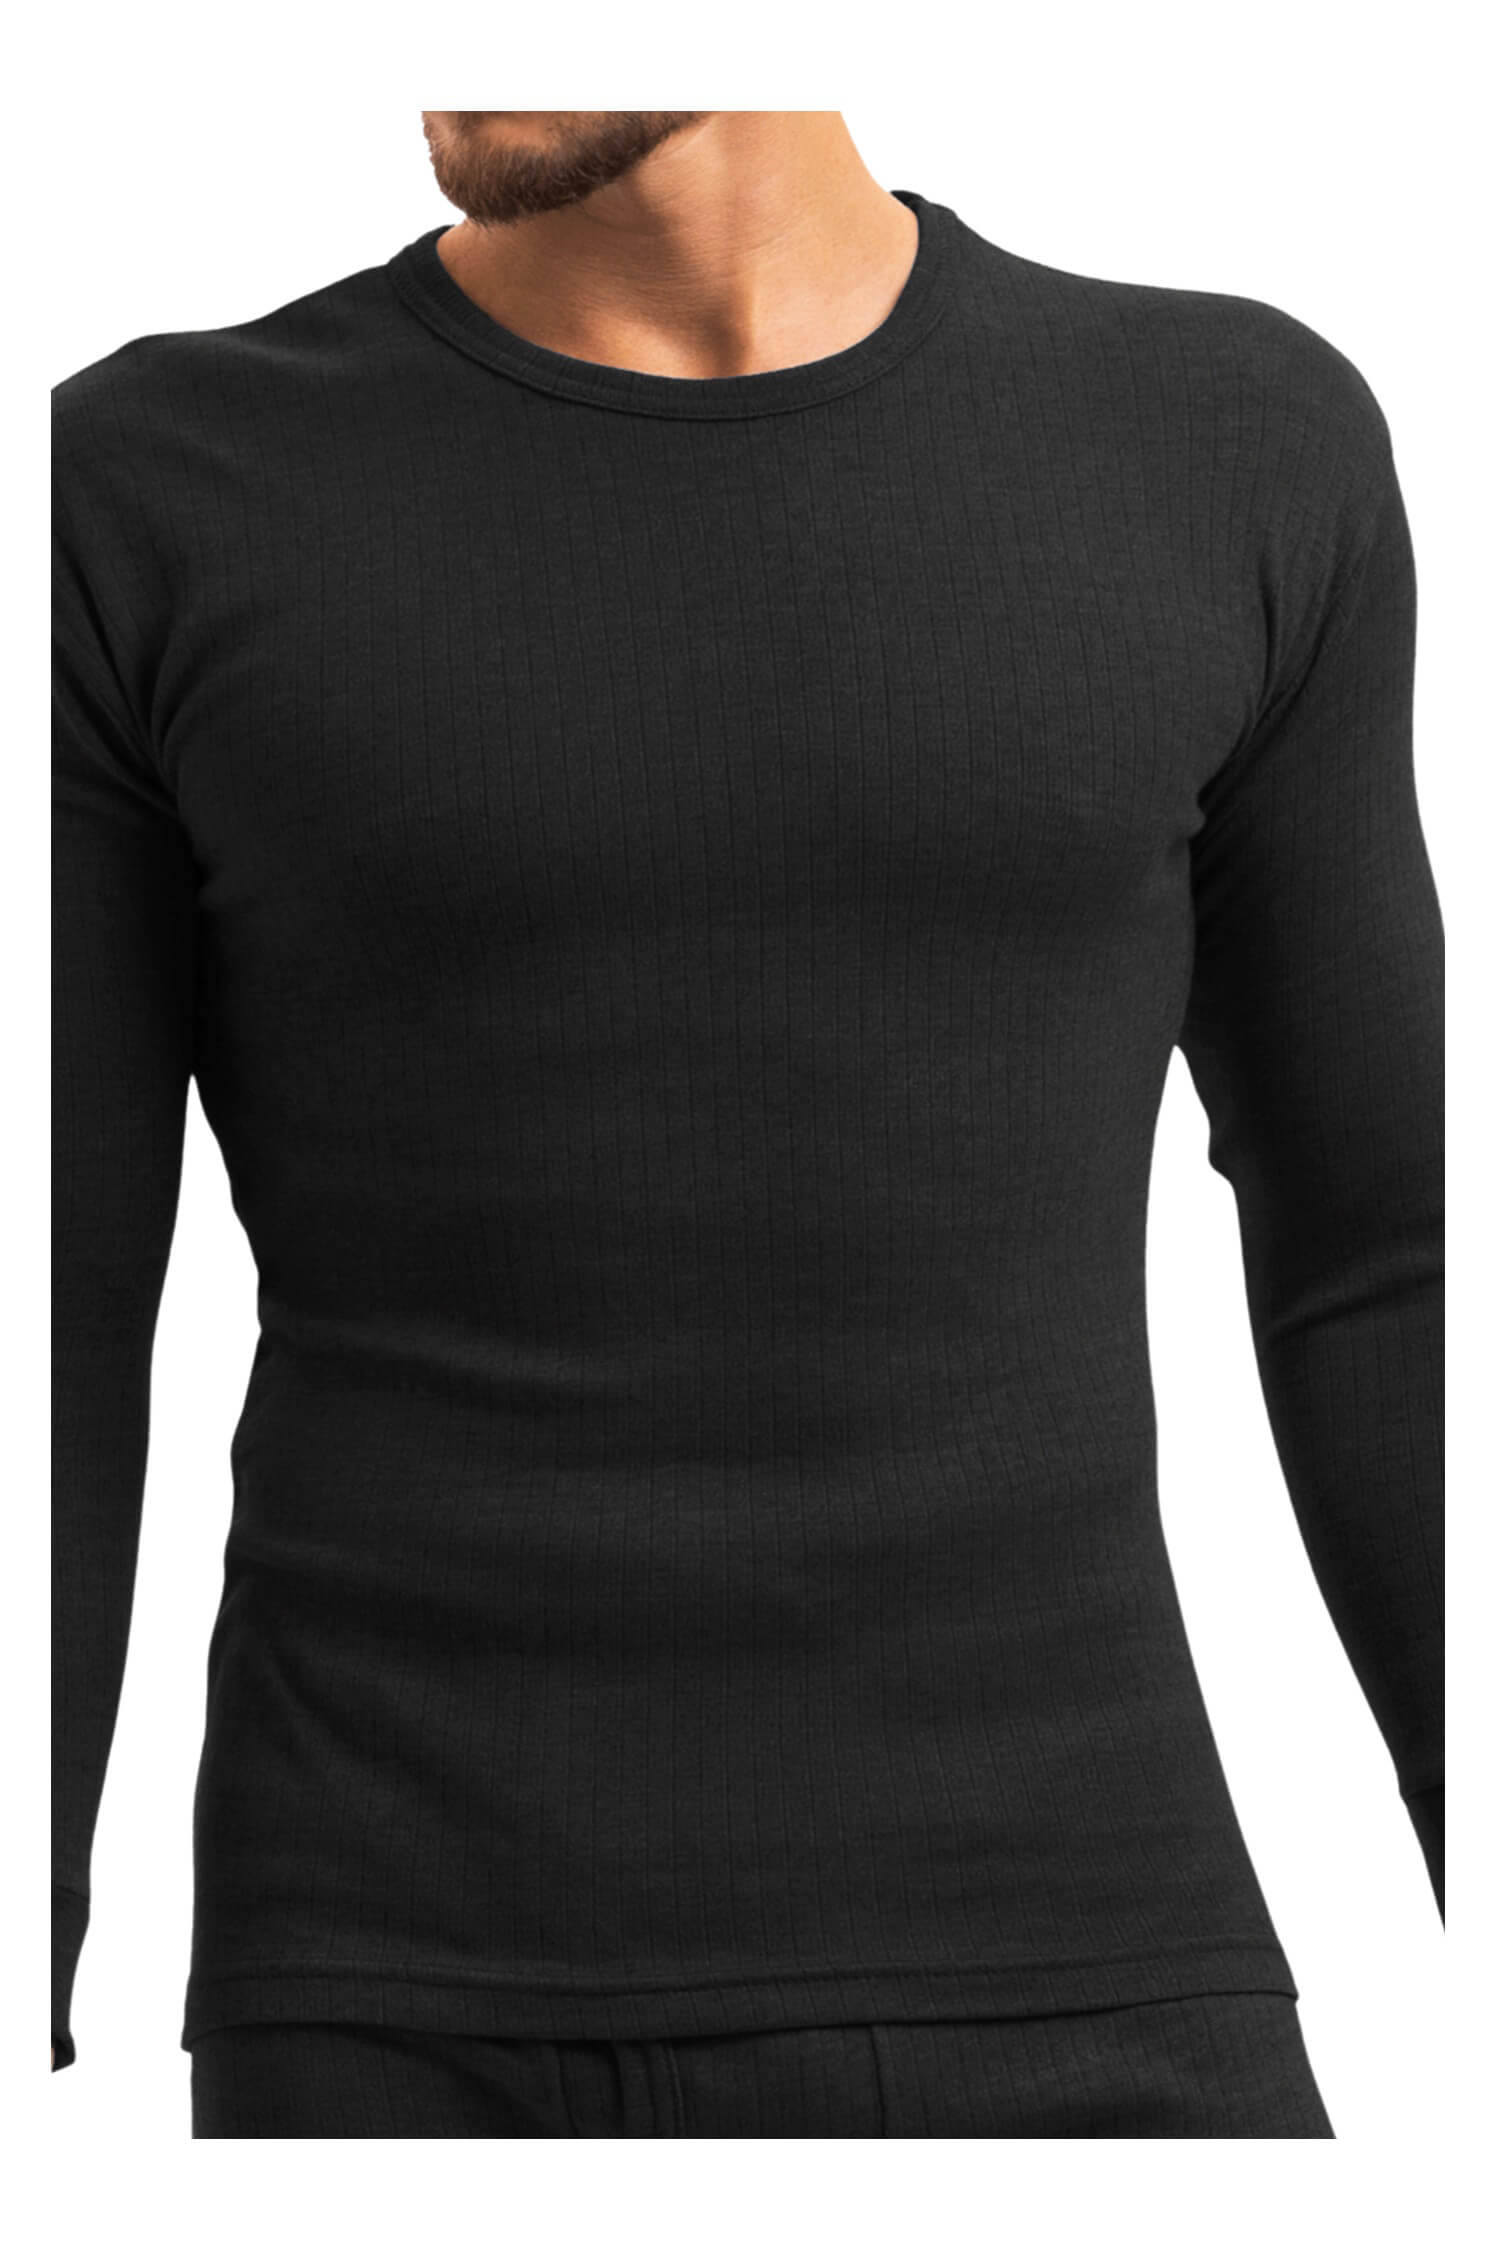 Braňo pánské thermo tričko 256 M černá